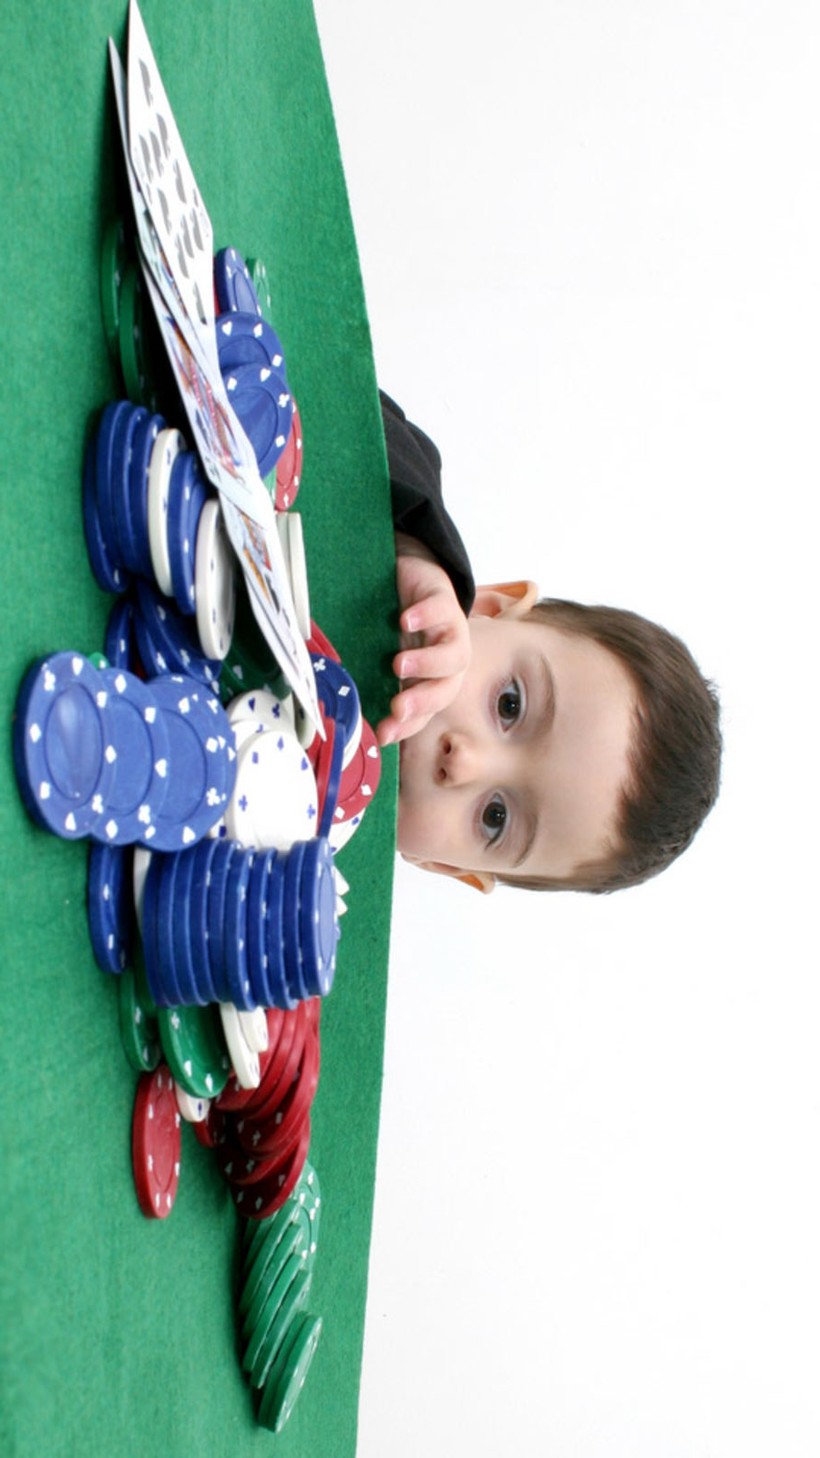 Giật mình nguyên nhân khiến số trẻ em chơi cờ bạc tăng mạnh